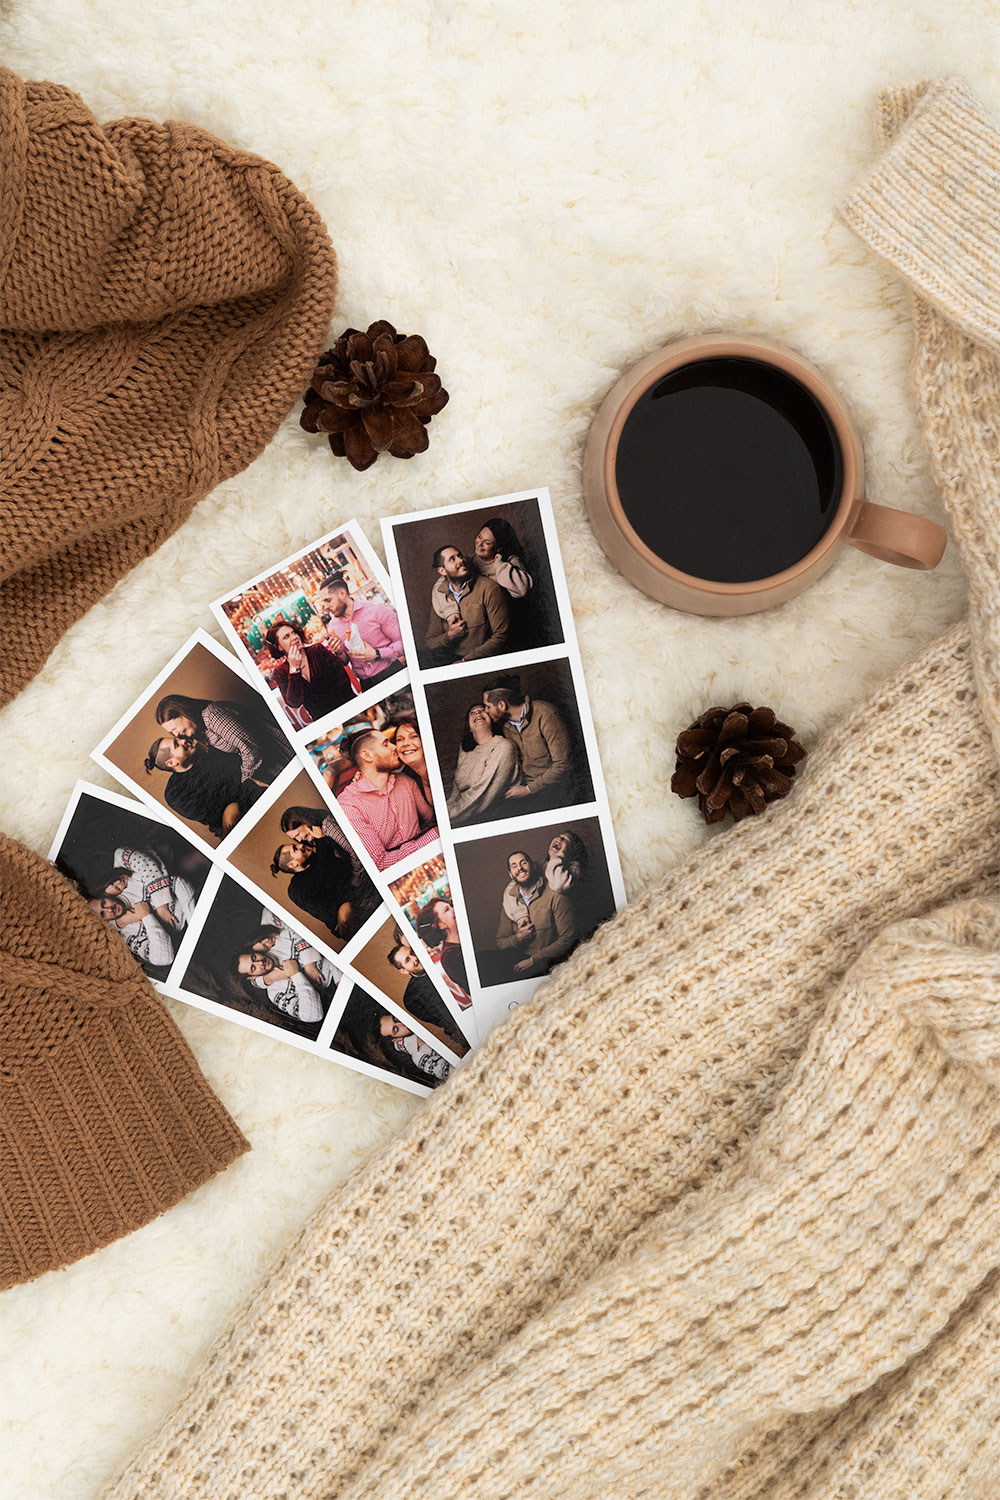 Les tirages photo cabines pour un cadeau photo personnalisé posée sur un lit dans une ambiance cozy avec un café